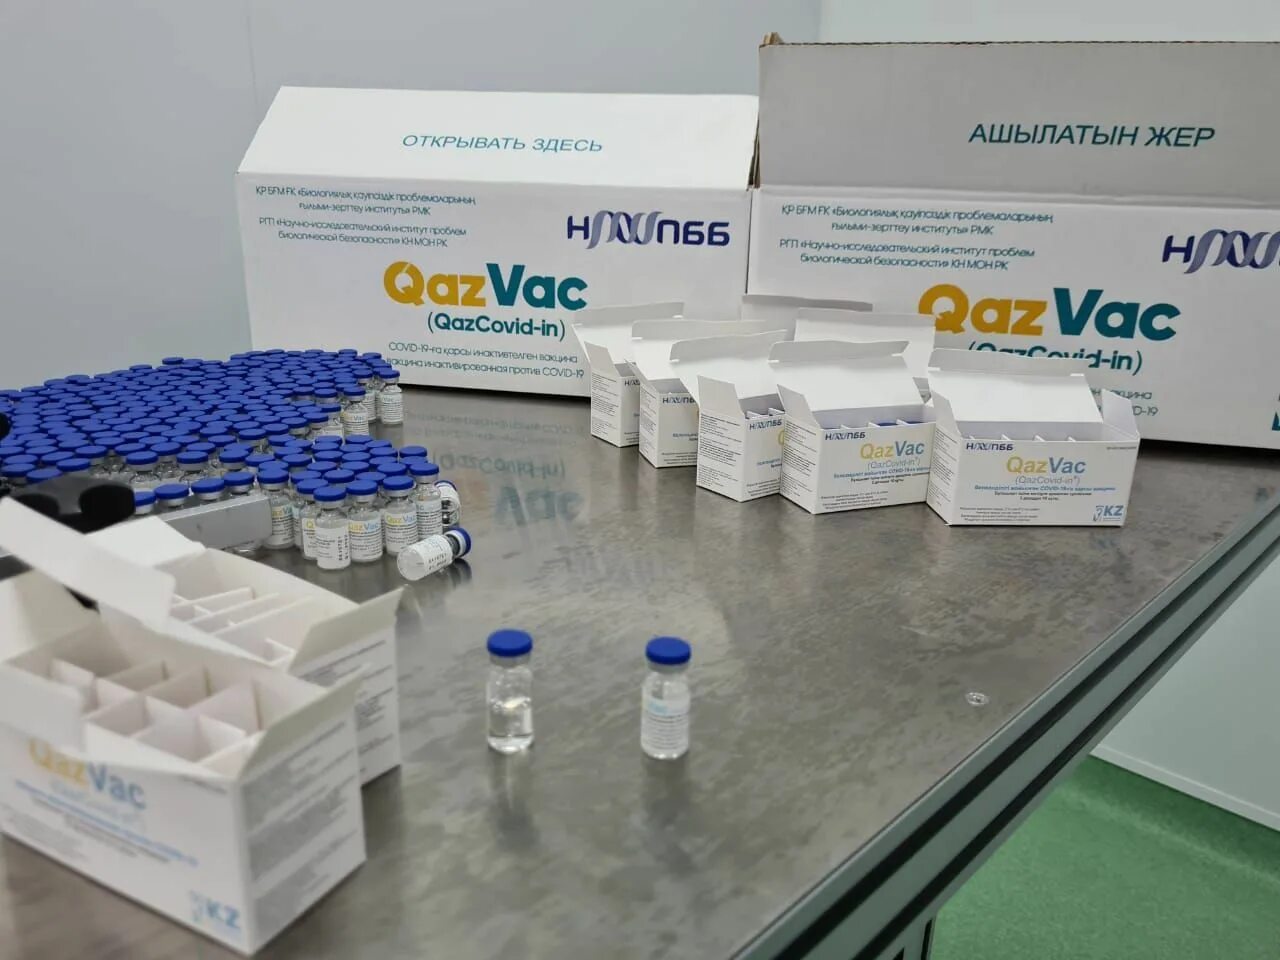 Qazvac. Воз вакцина от коронавируса. Казвак картинки. Казахстанская соплиника.